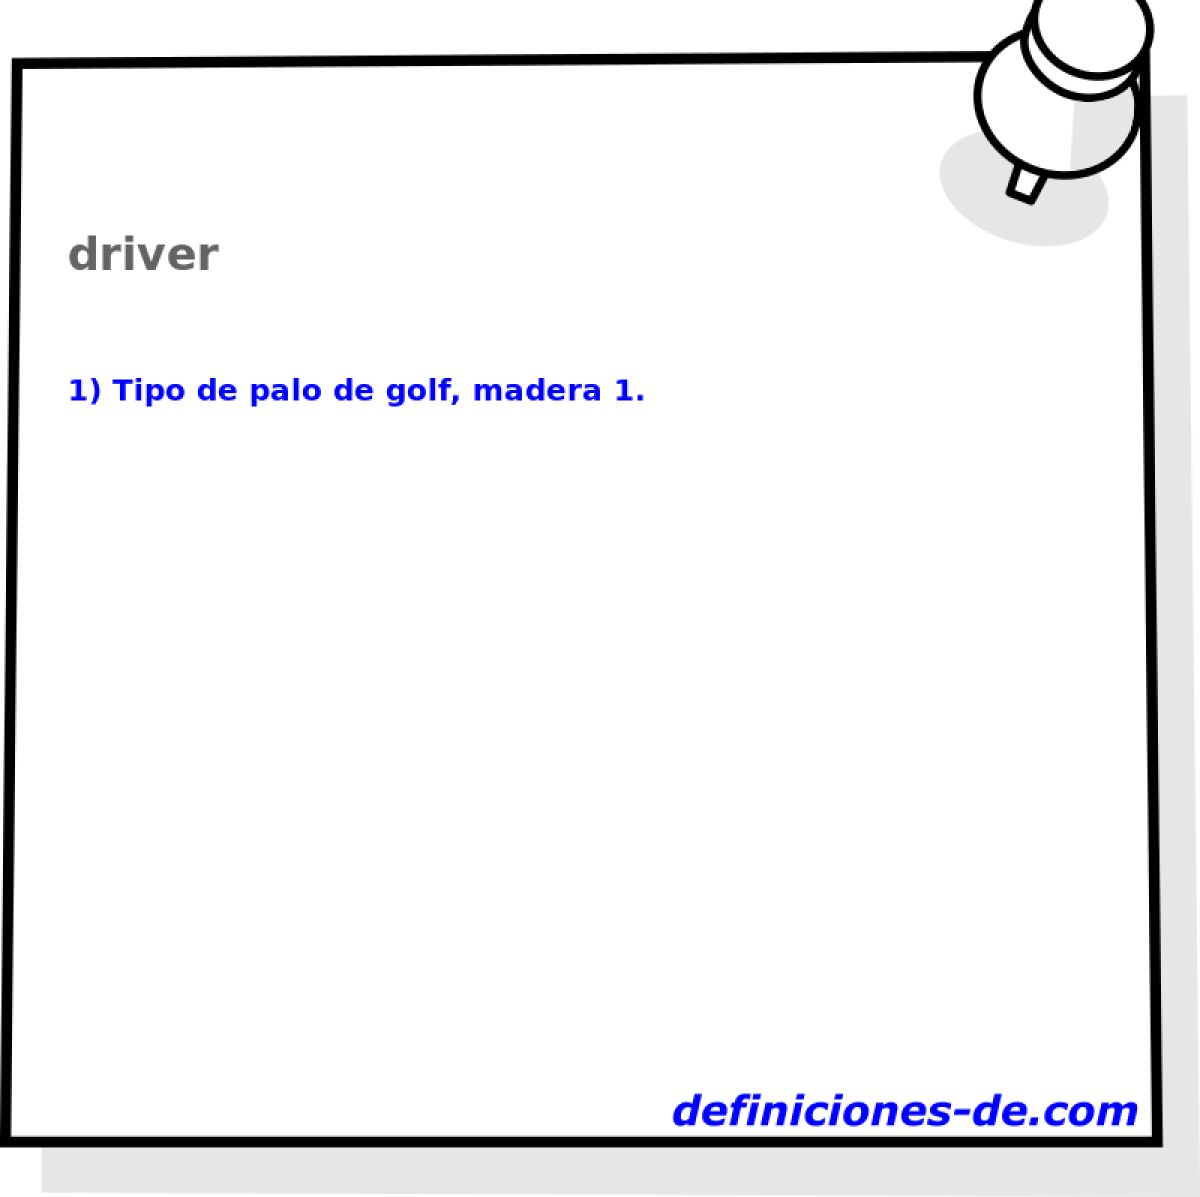 driver 